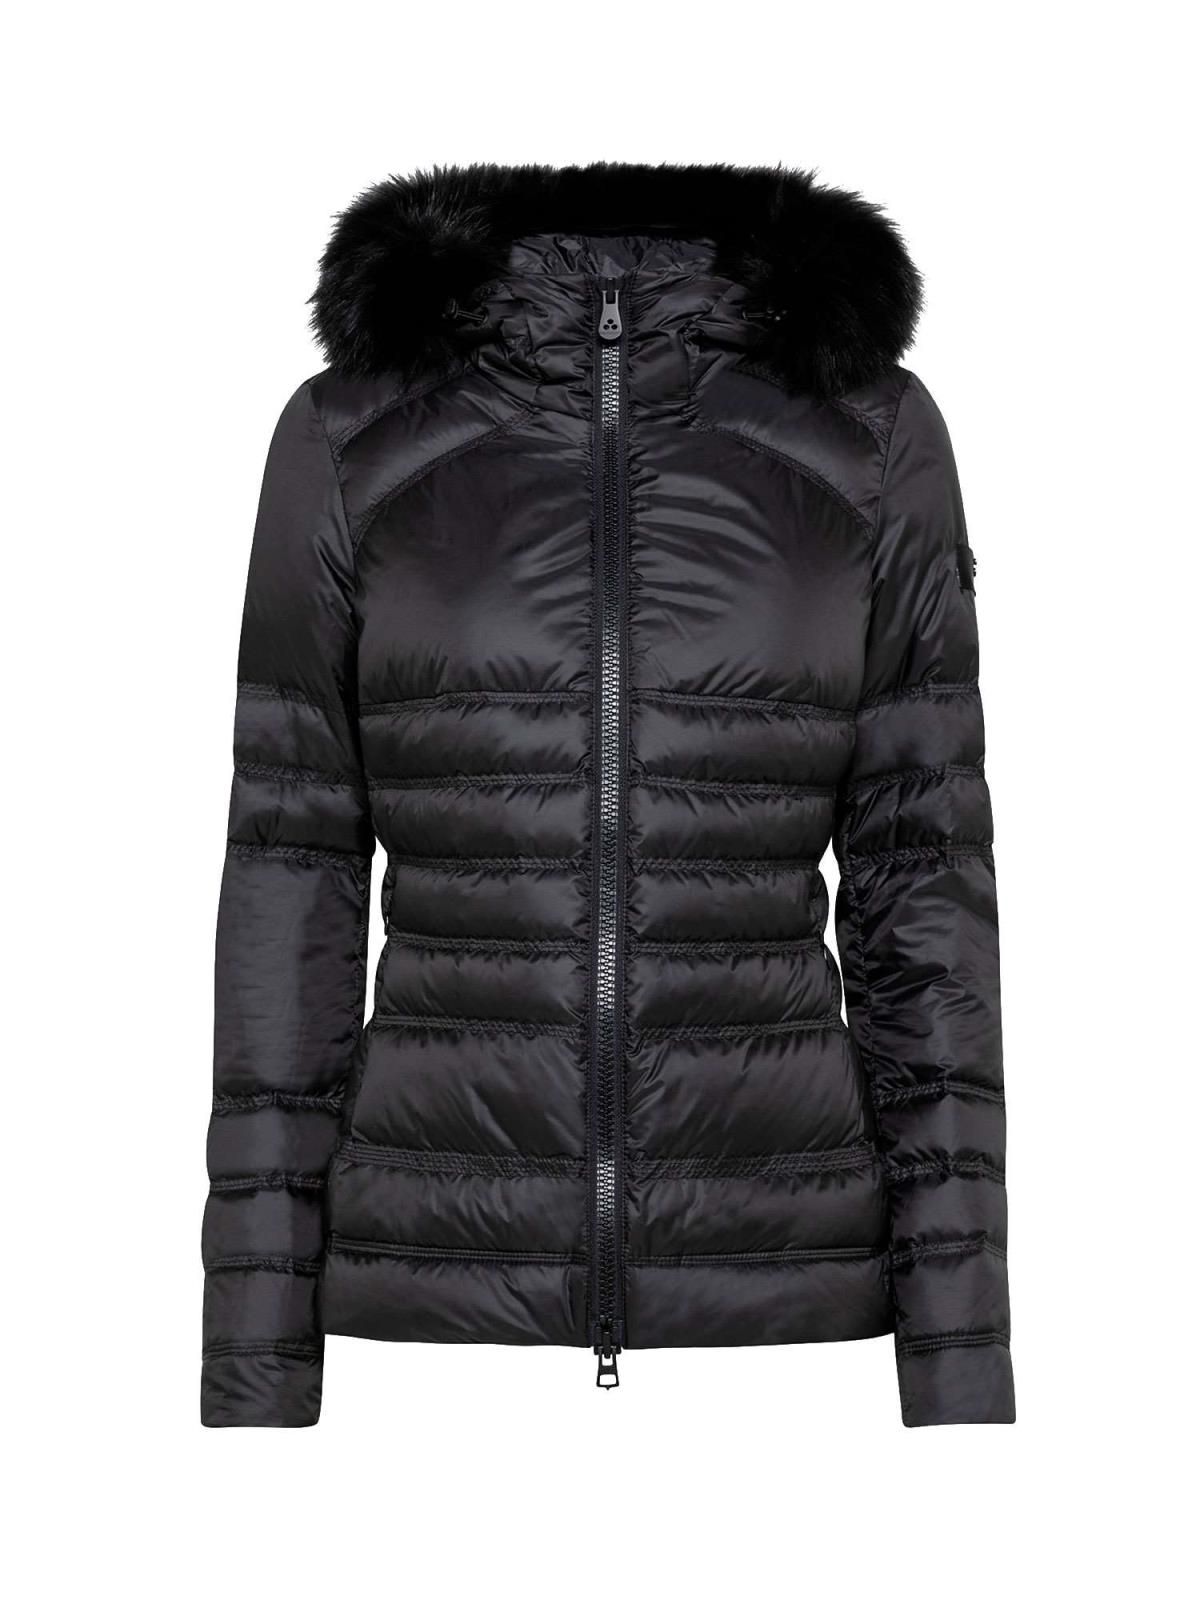 Chic Black Fur-Trimmed Winter Jacket